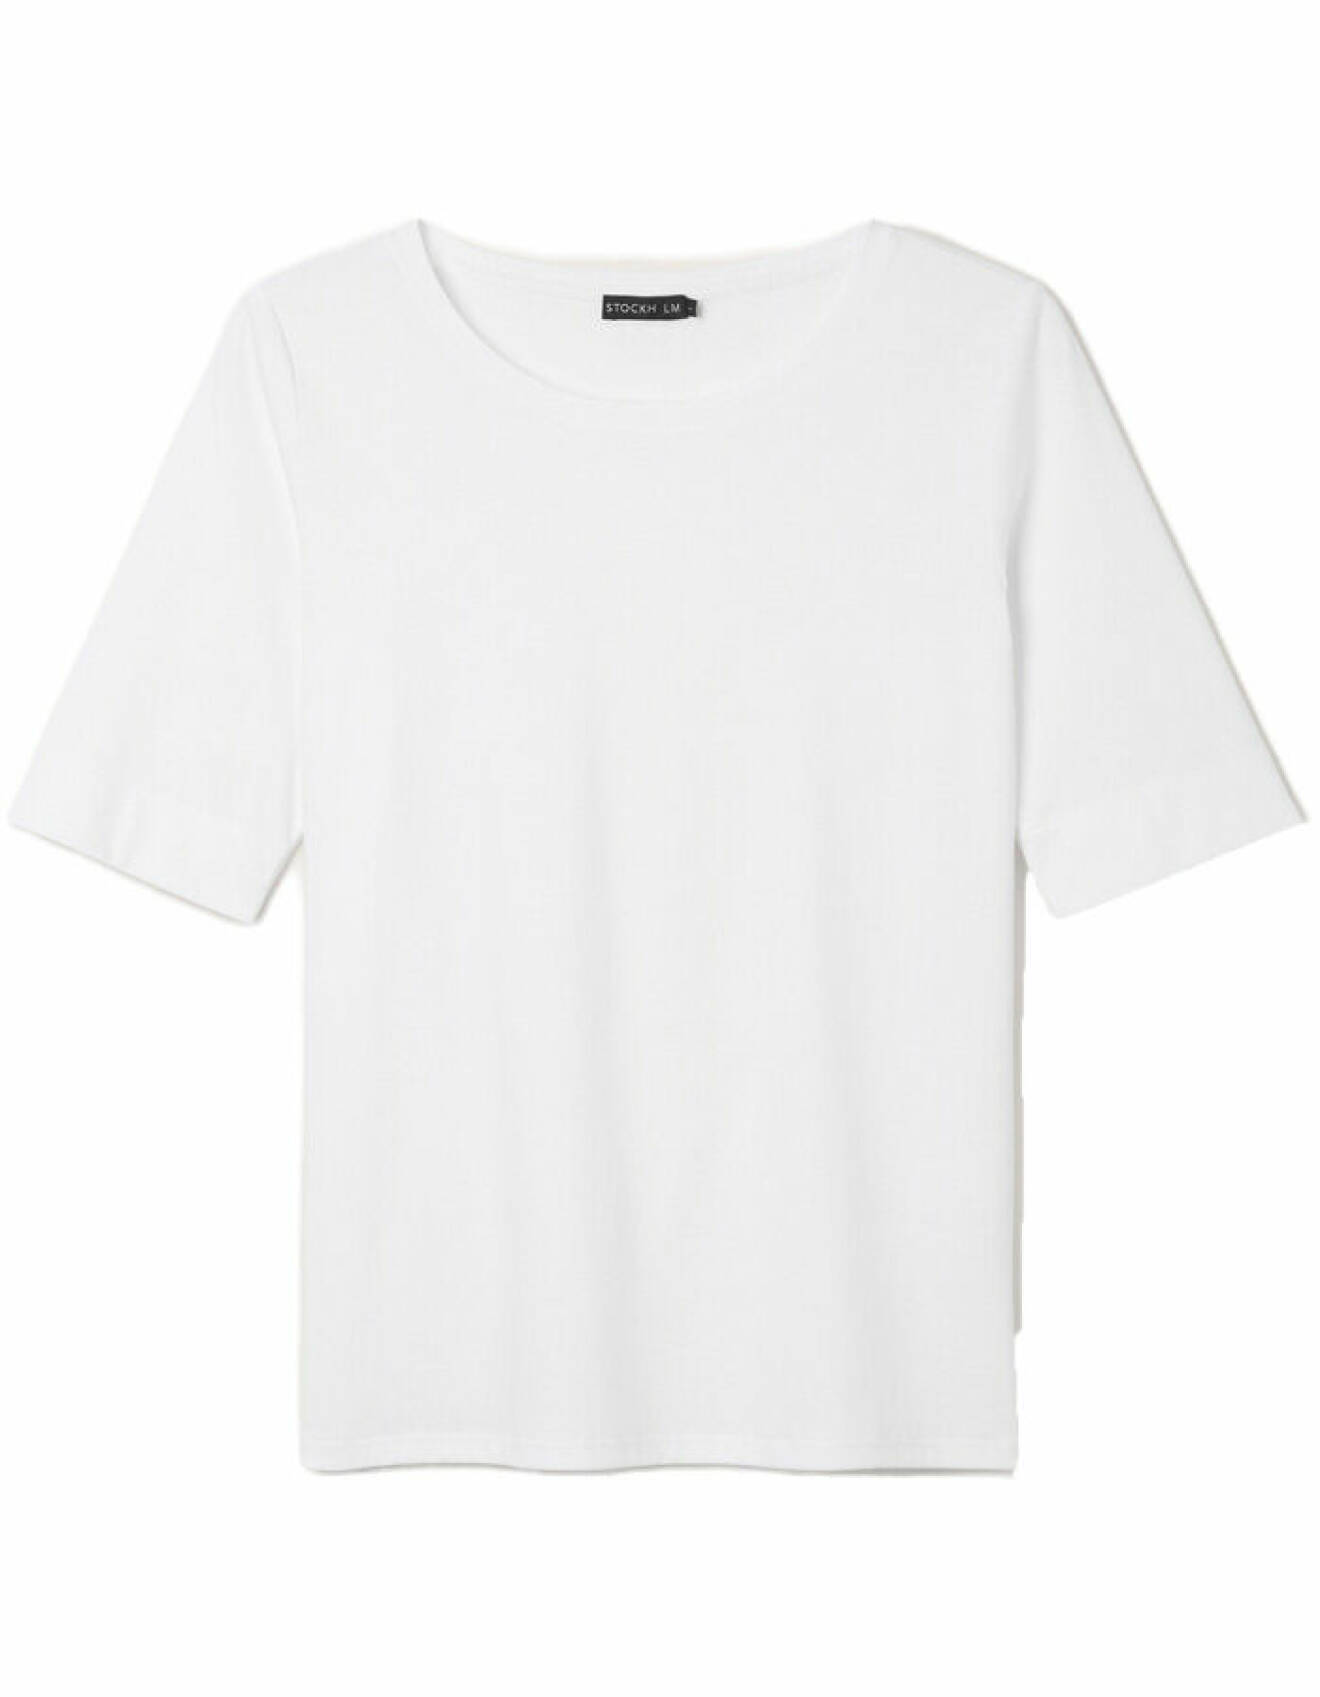 vit t-shirt i bomull för dam från stockh lm